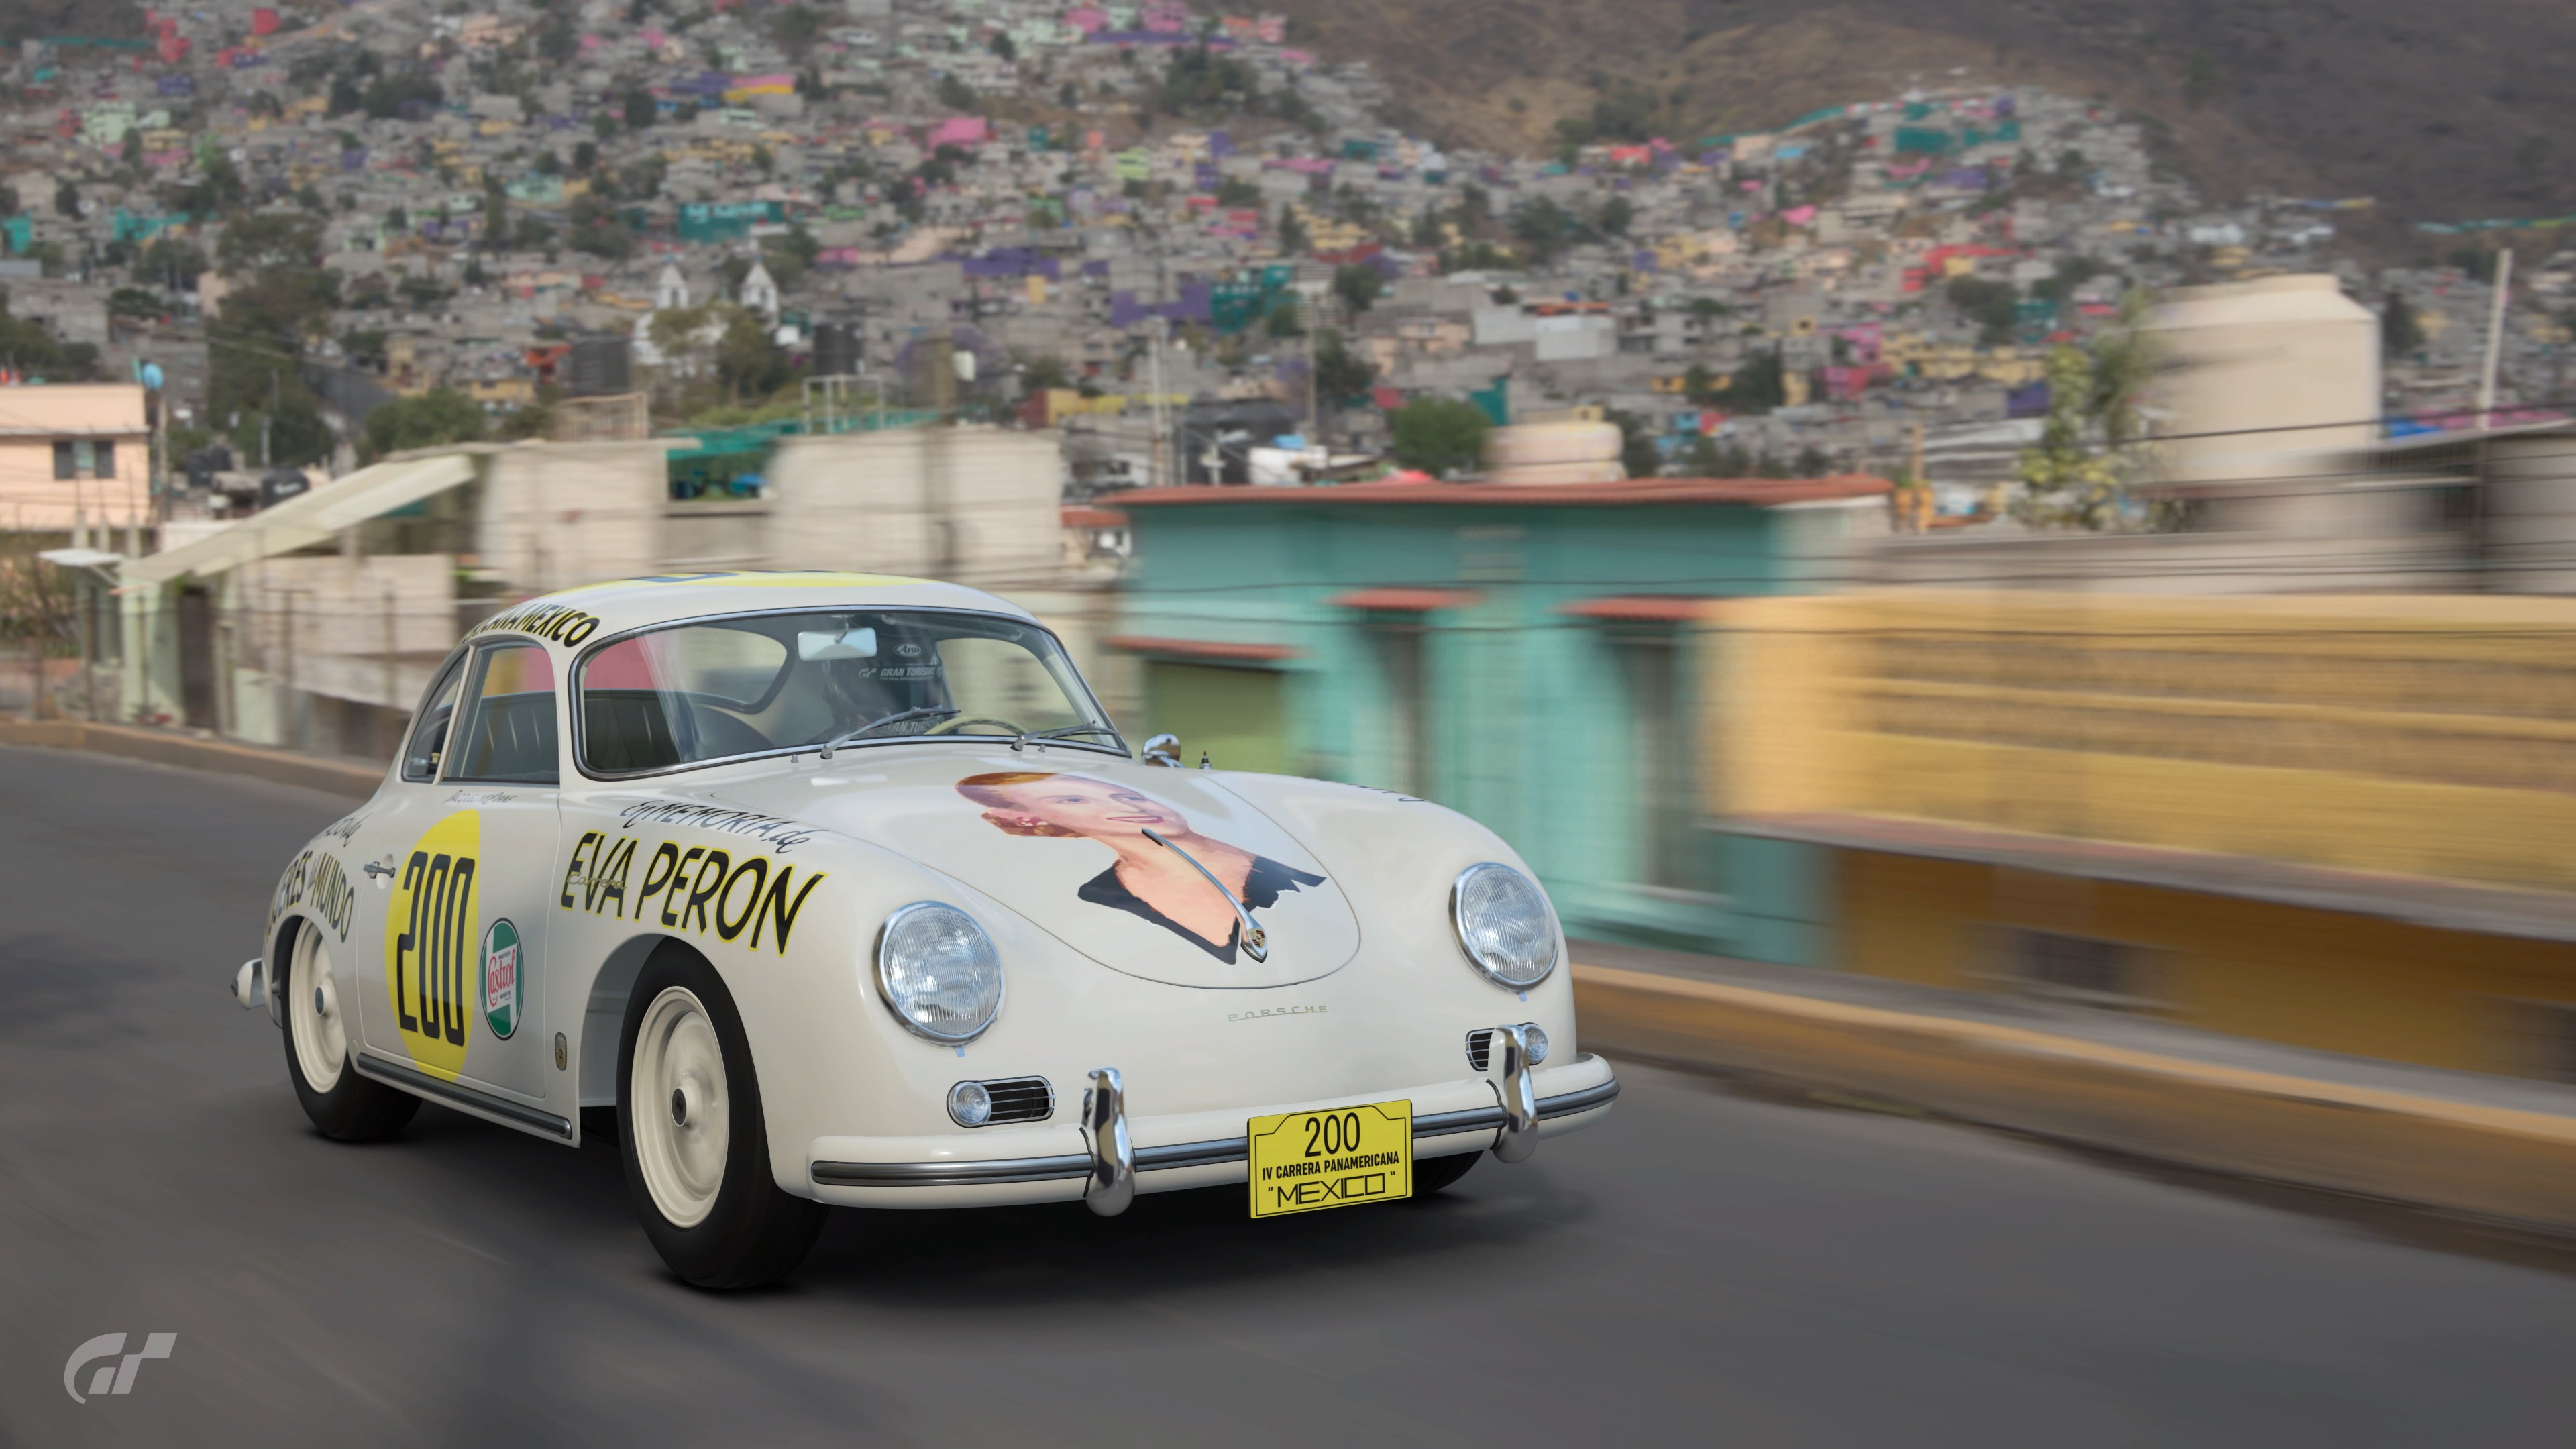 'Eva Peron' Carrera Panamericana